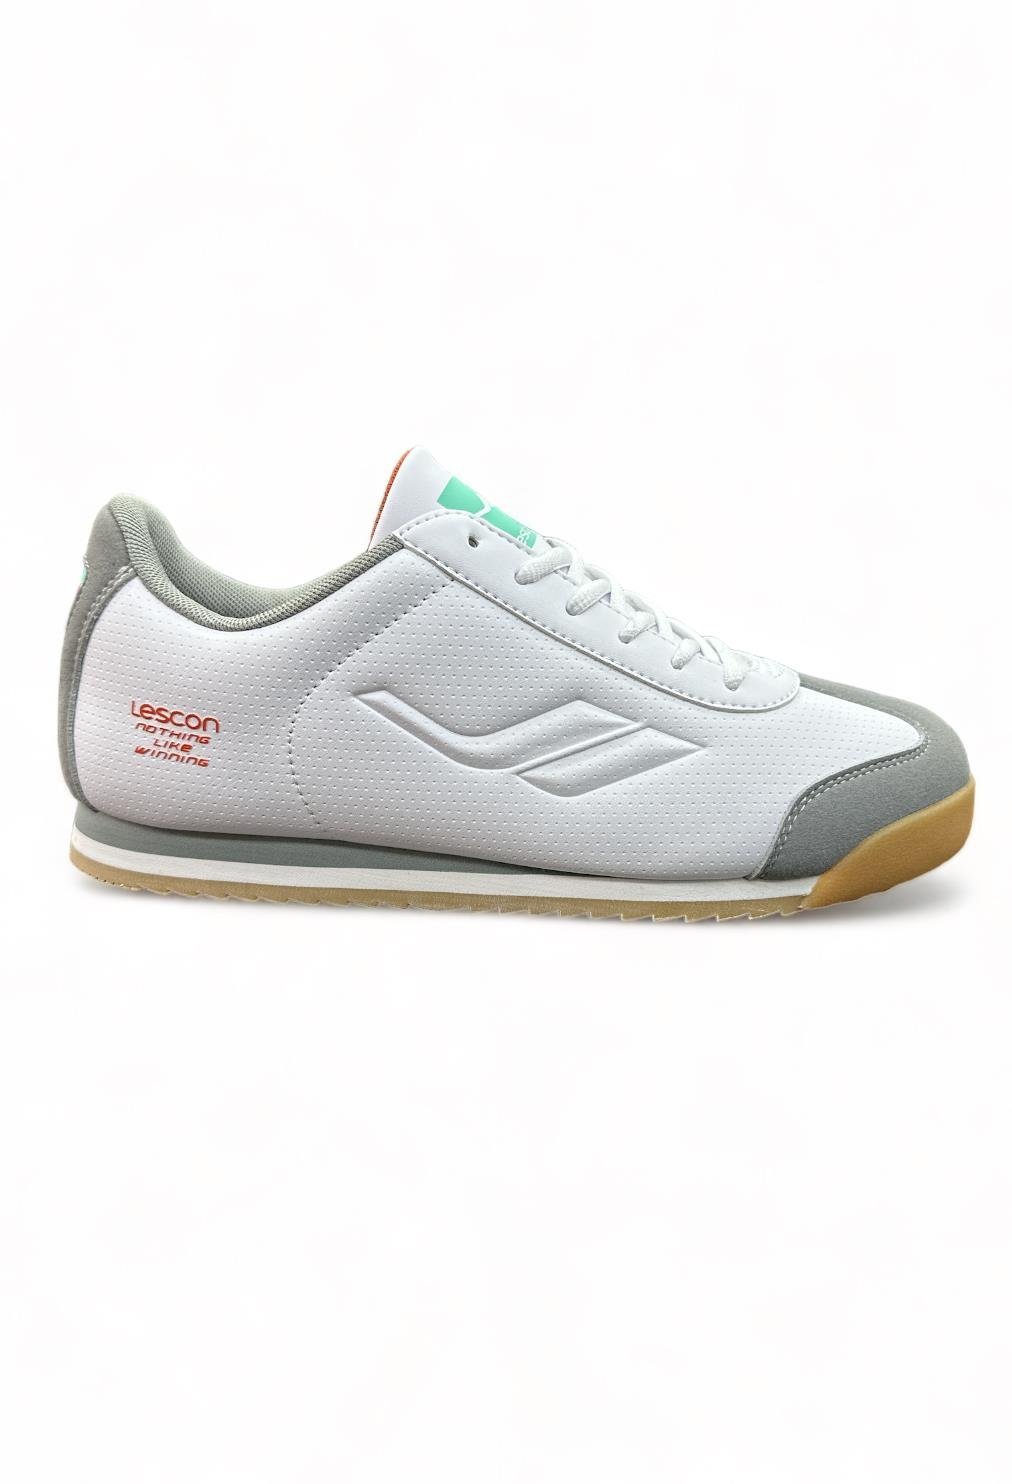 Europaspor.com'da LESCON Winner 8 Beyaz Erkek Sneaker Ayakkabı için en  uygun fiyatı bulabilirsin. Hemen tıkla, avantajlı fiyatlarla sneaker  ayakkabını satın al!